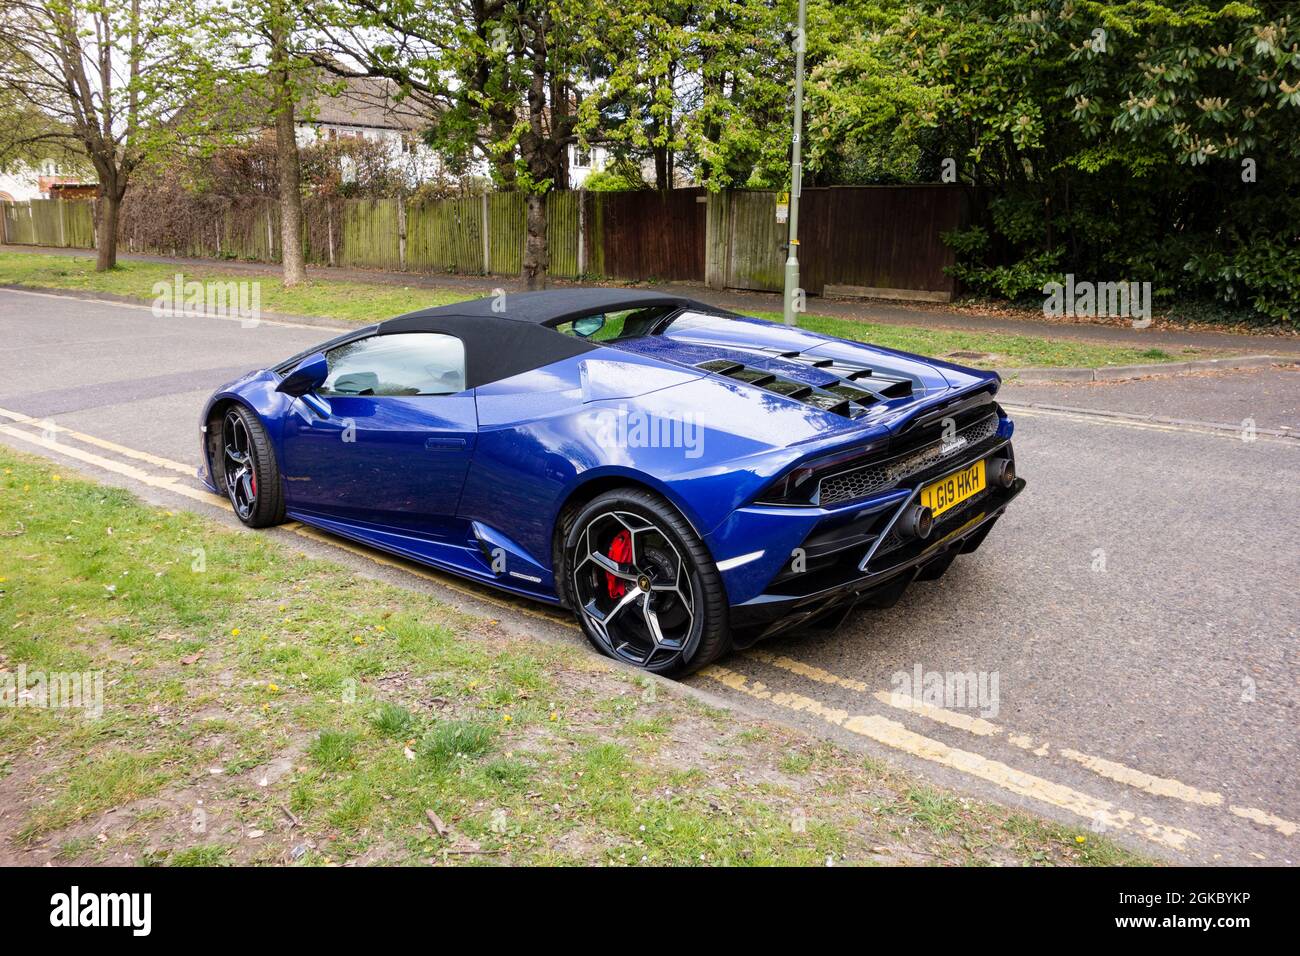 Blue Lamborghini geparkt auf doppelten gelben Linien, Großbritannien Stockfoto